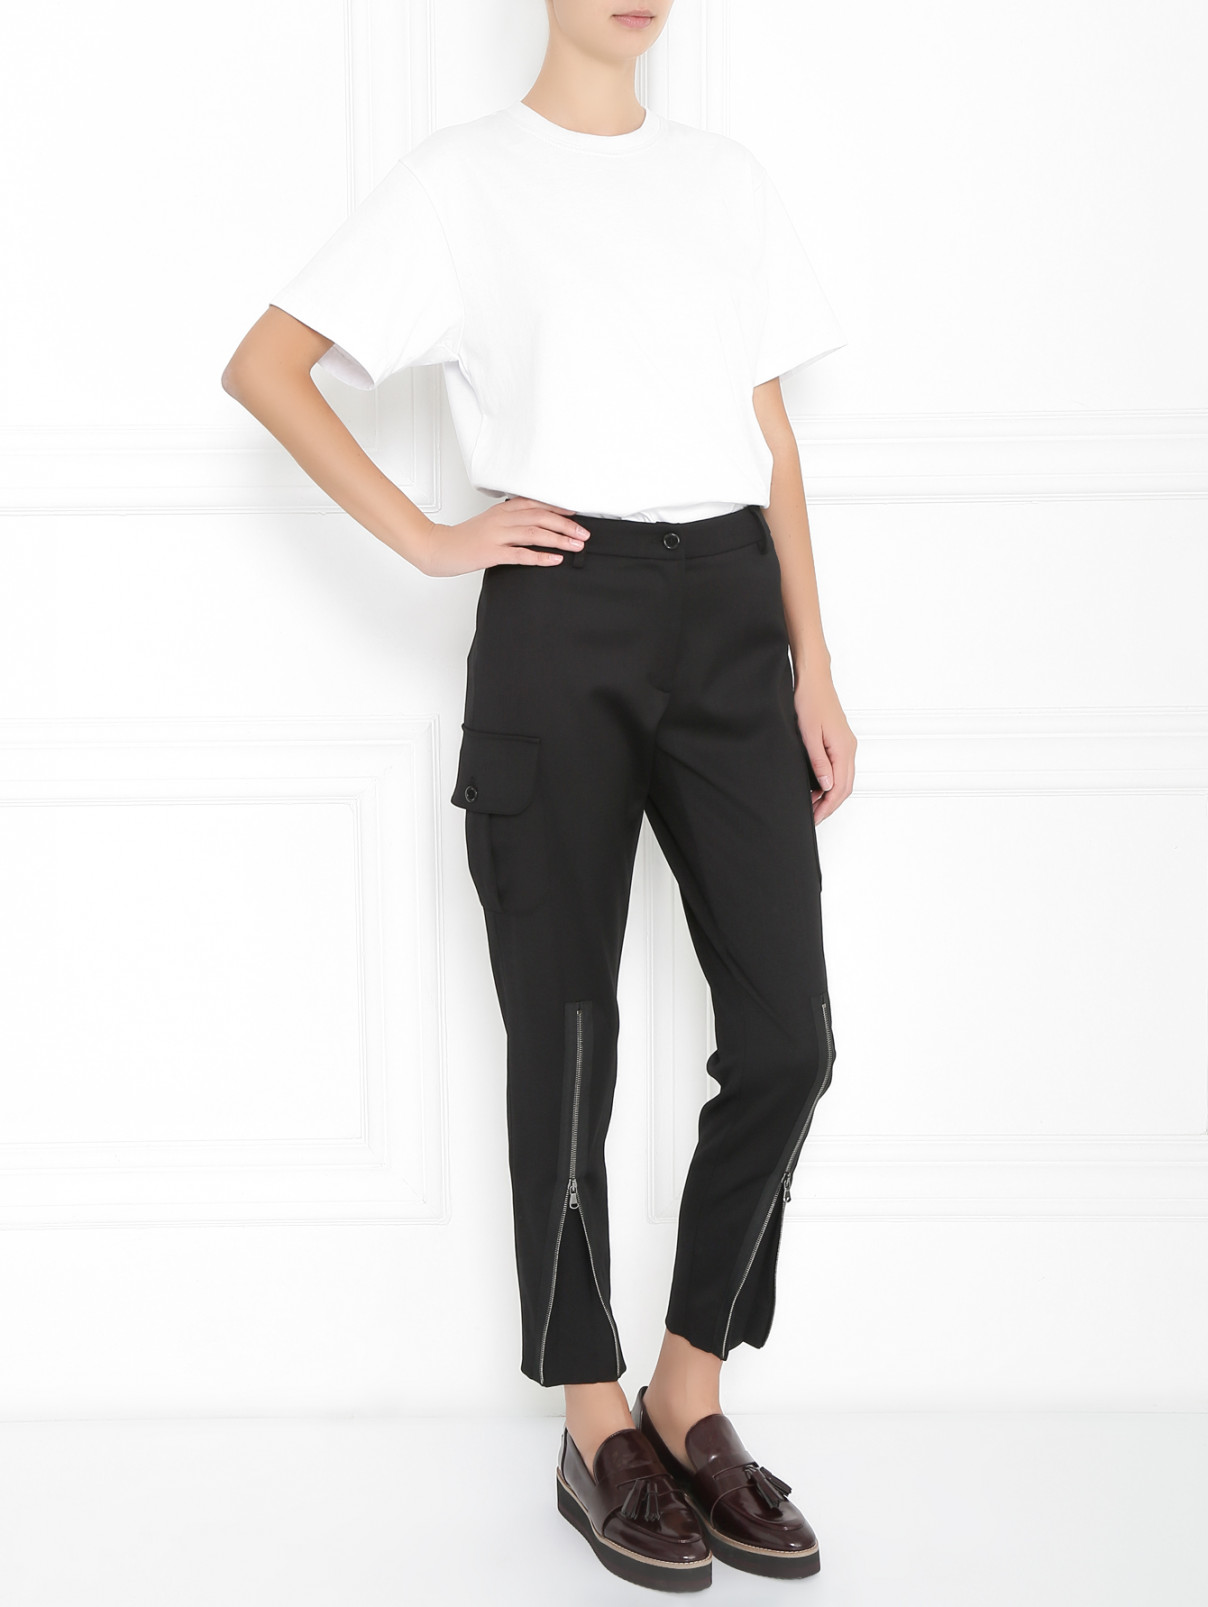 Зауженные брюки из шерсти с накладными карманами Moschino Couture  –  Модель Общий вид  – Цвет:  Черный